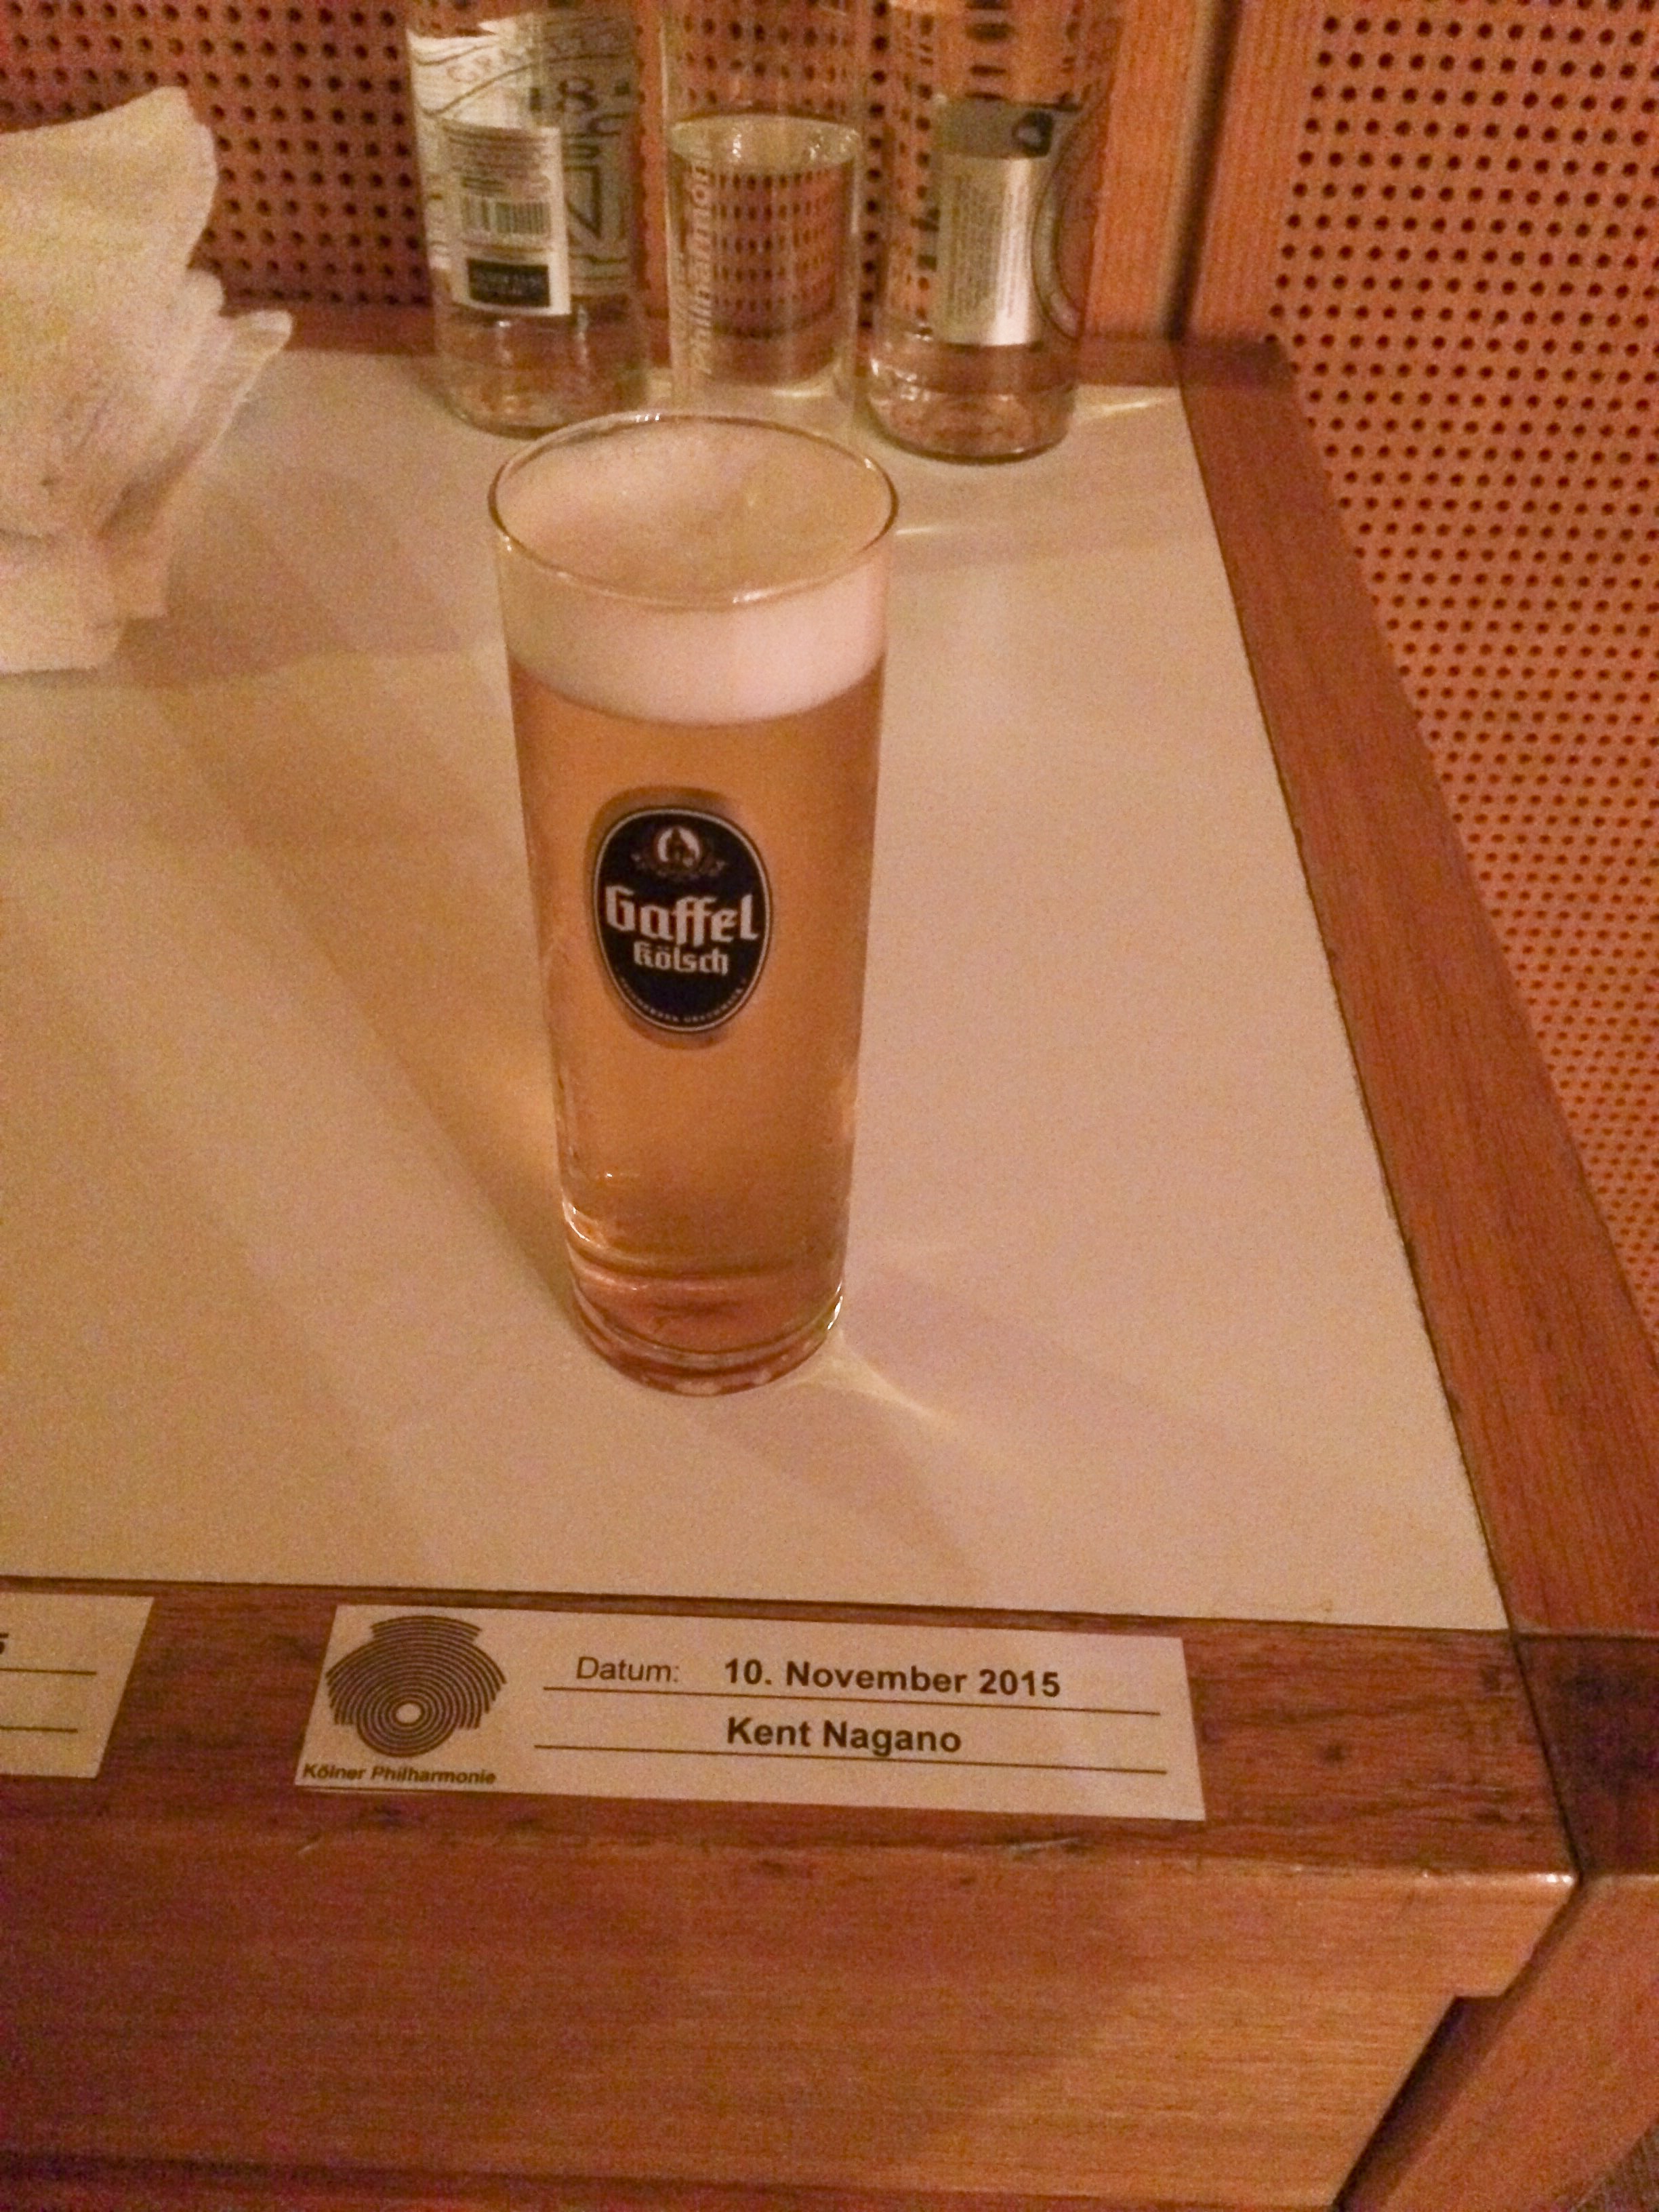 Kölnpersonalen passade på att flirta lite med Nagano och placerade ett privat glas med namnlapp vid sceningången.